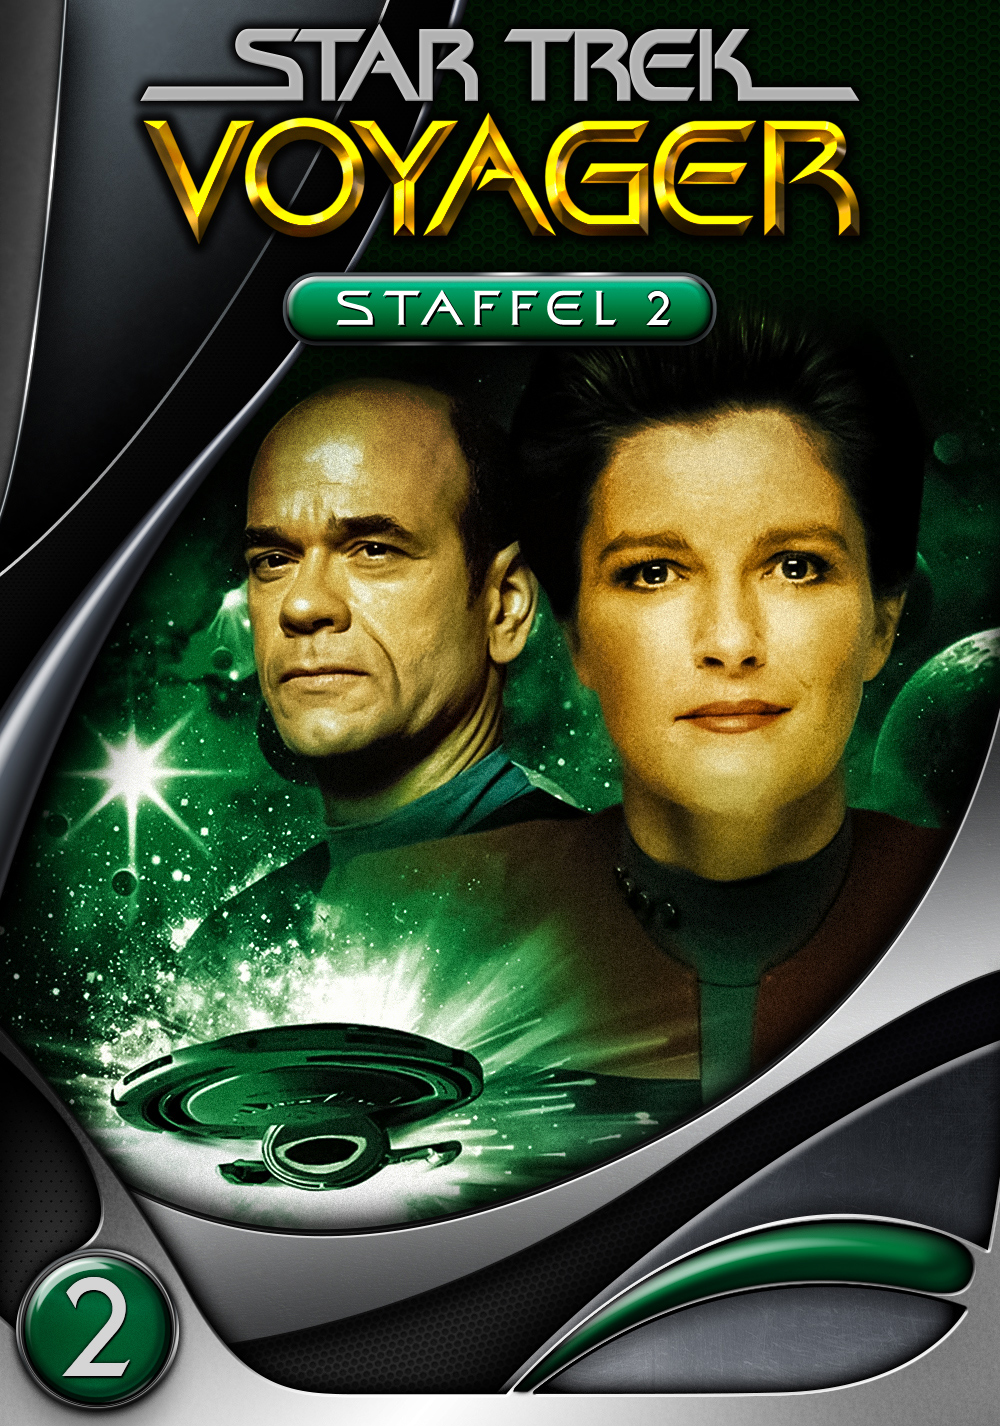 Star Trek: Voyager Art